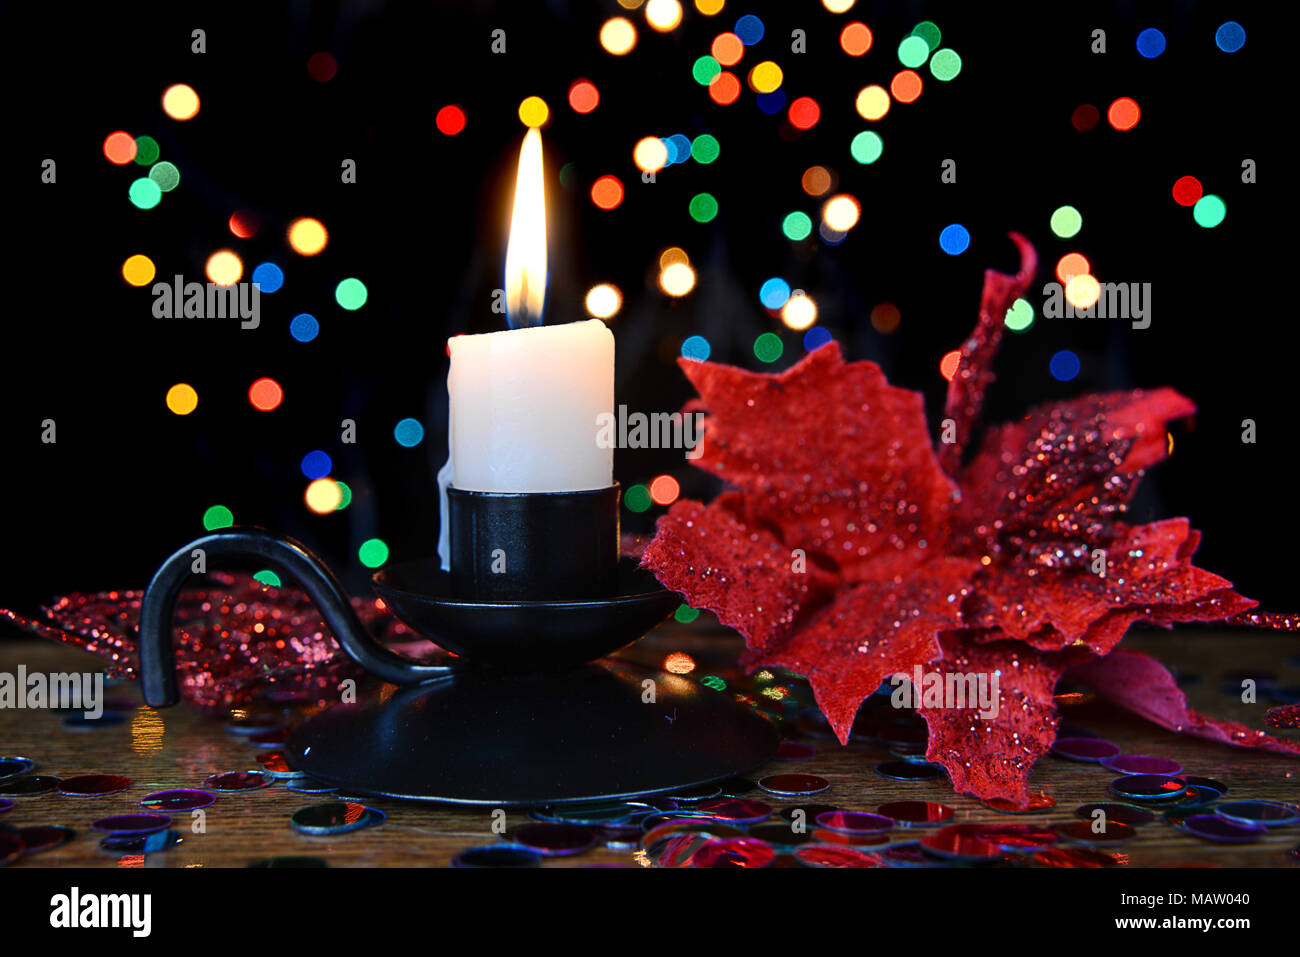 Bougie allumée dans un chandelier noir et une fleur rouge contre un arrière-plan flou multicolore. Composition de Noël Banque D'Images